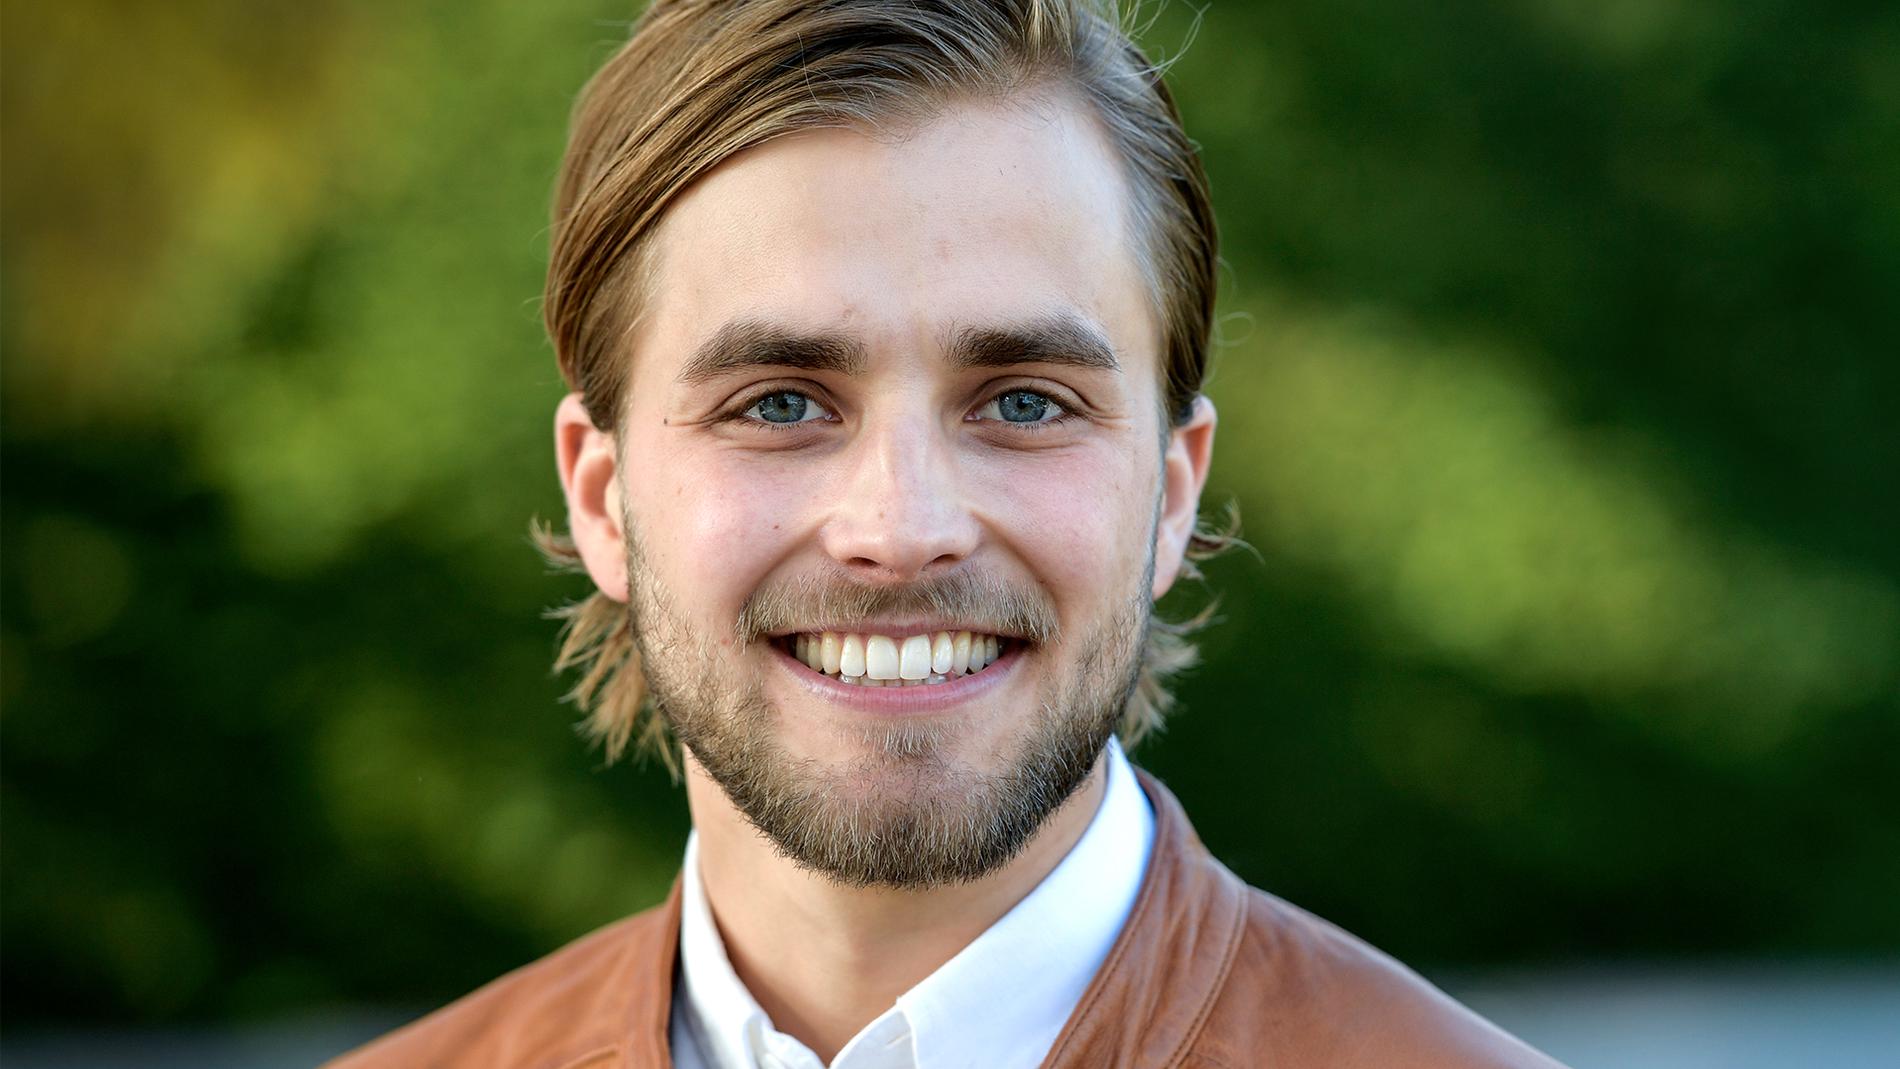 Håkans ”farbror”, Joacim Rickling, som var med i Bonde söker fru 2017.